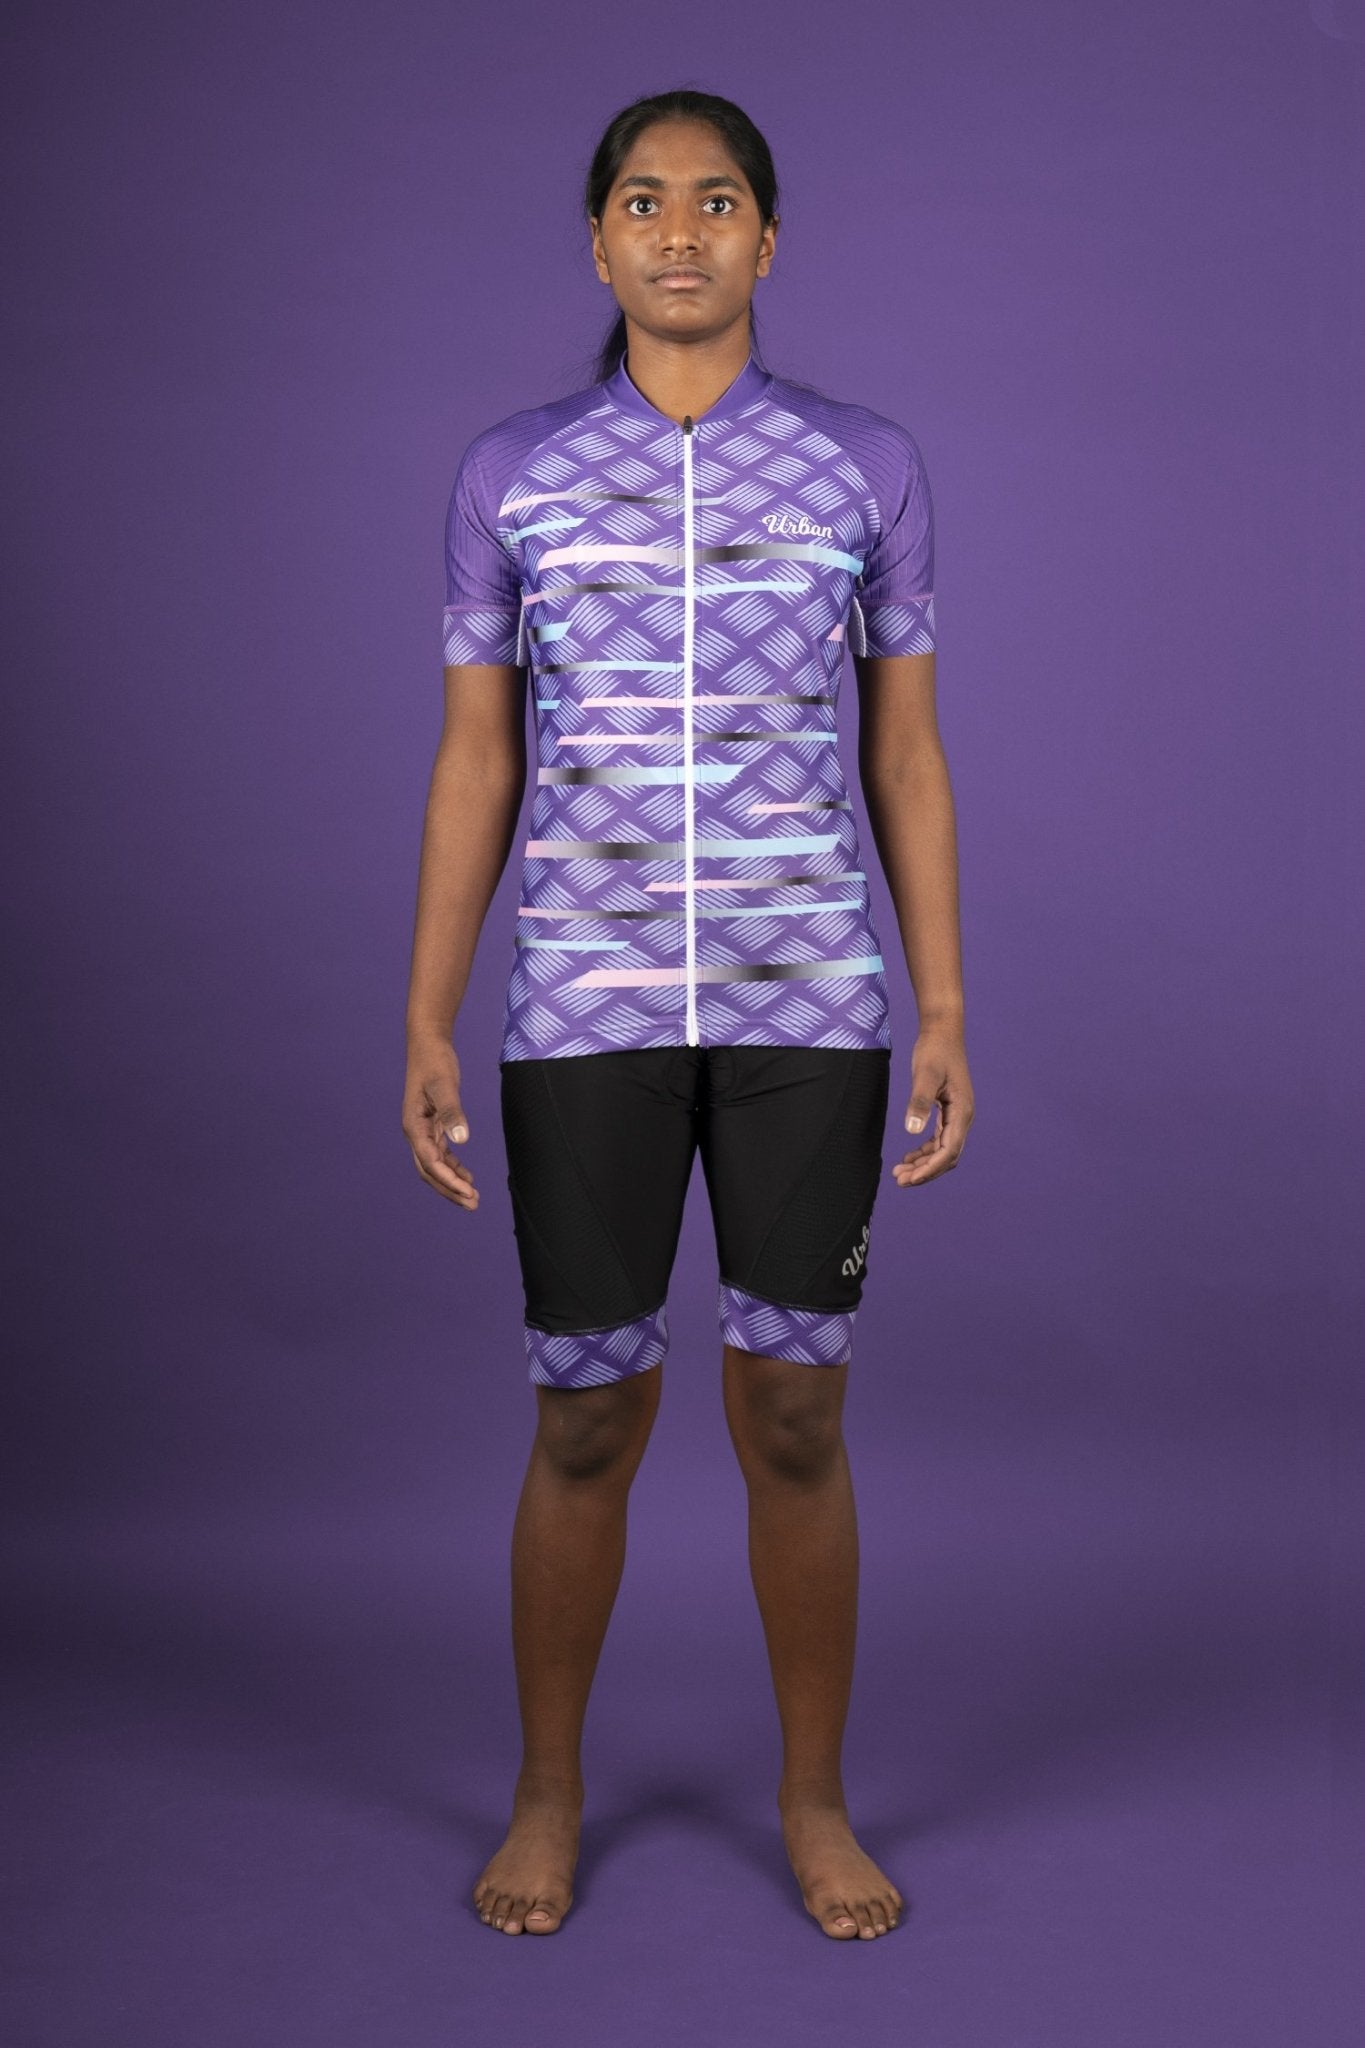 Women's Pro Series Purple Cycling Short Sleeve Jerseys / Bib